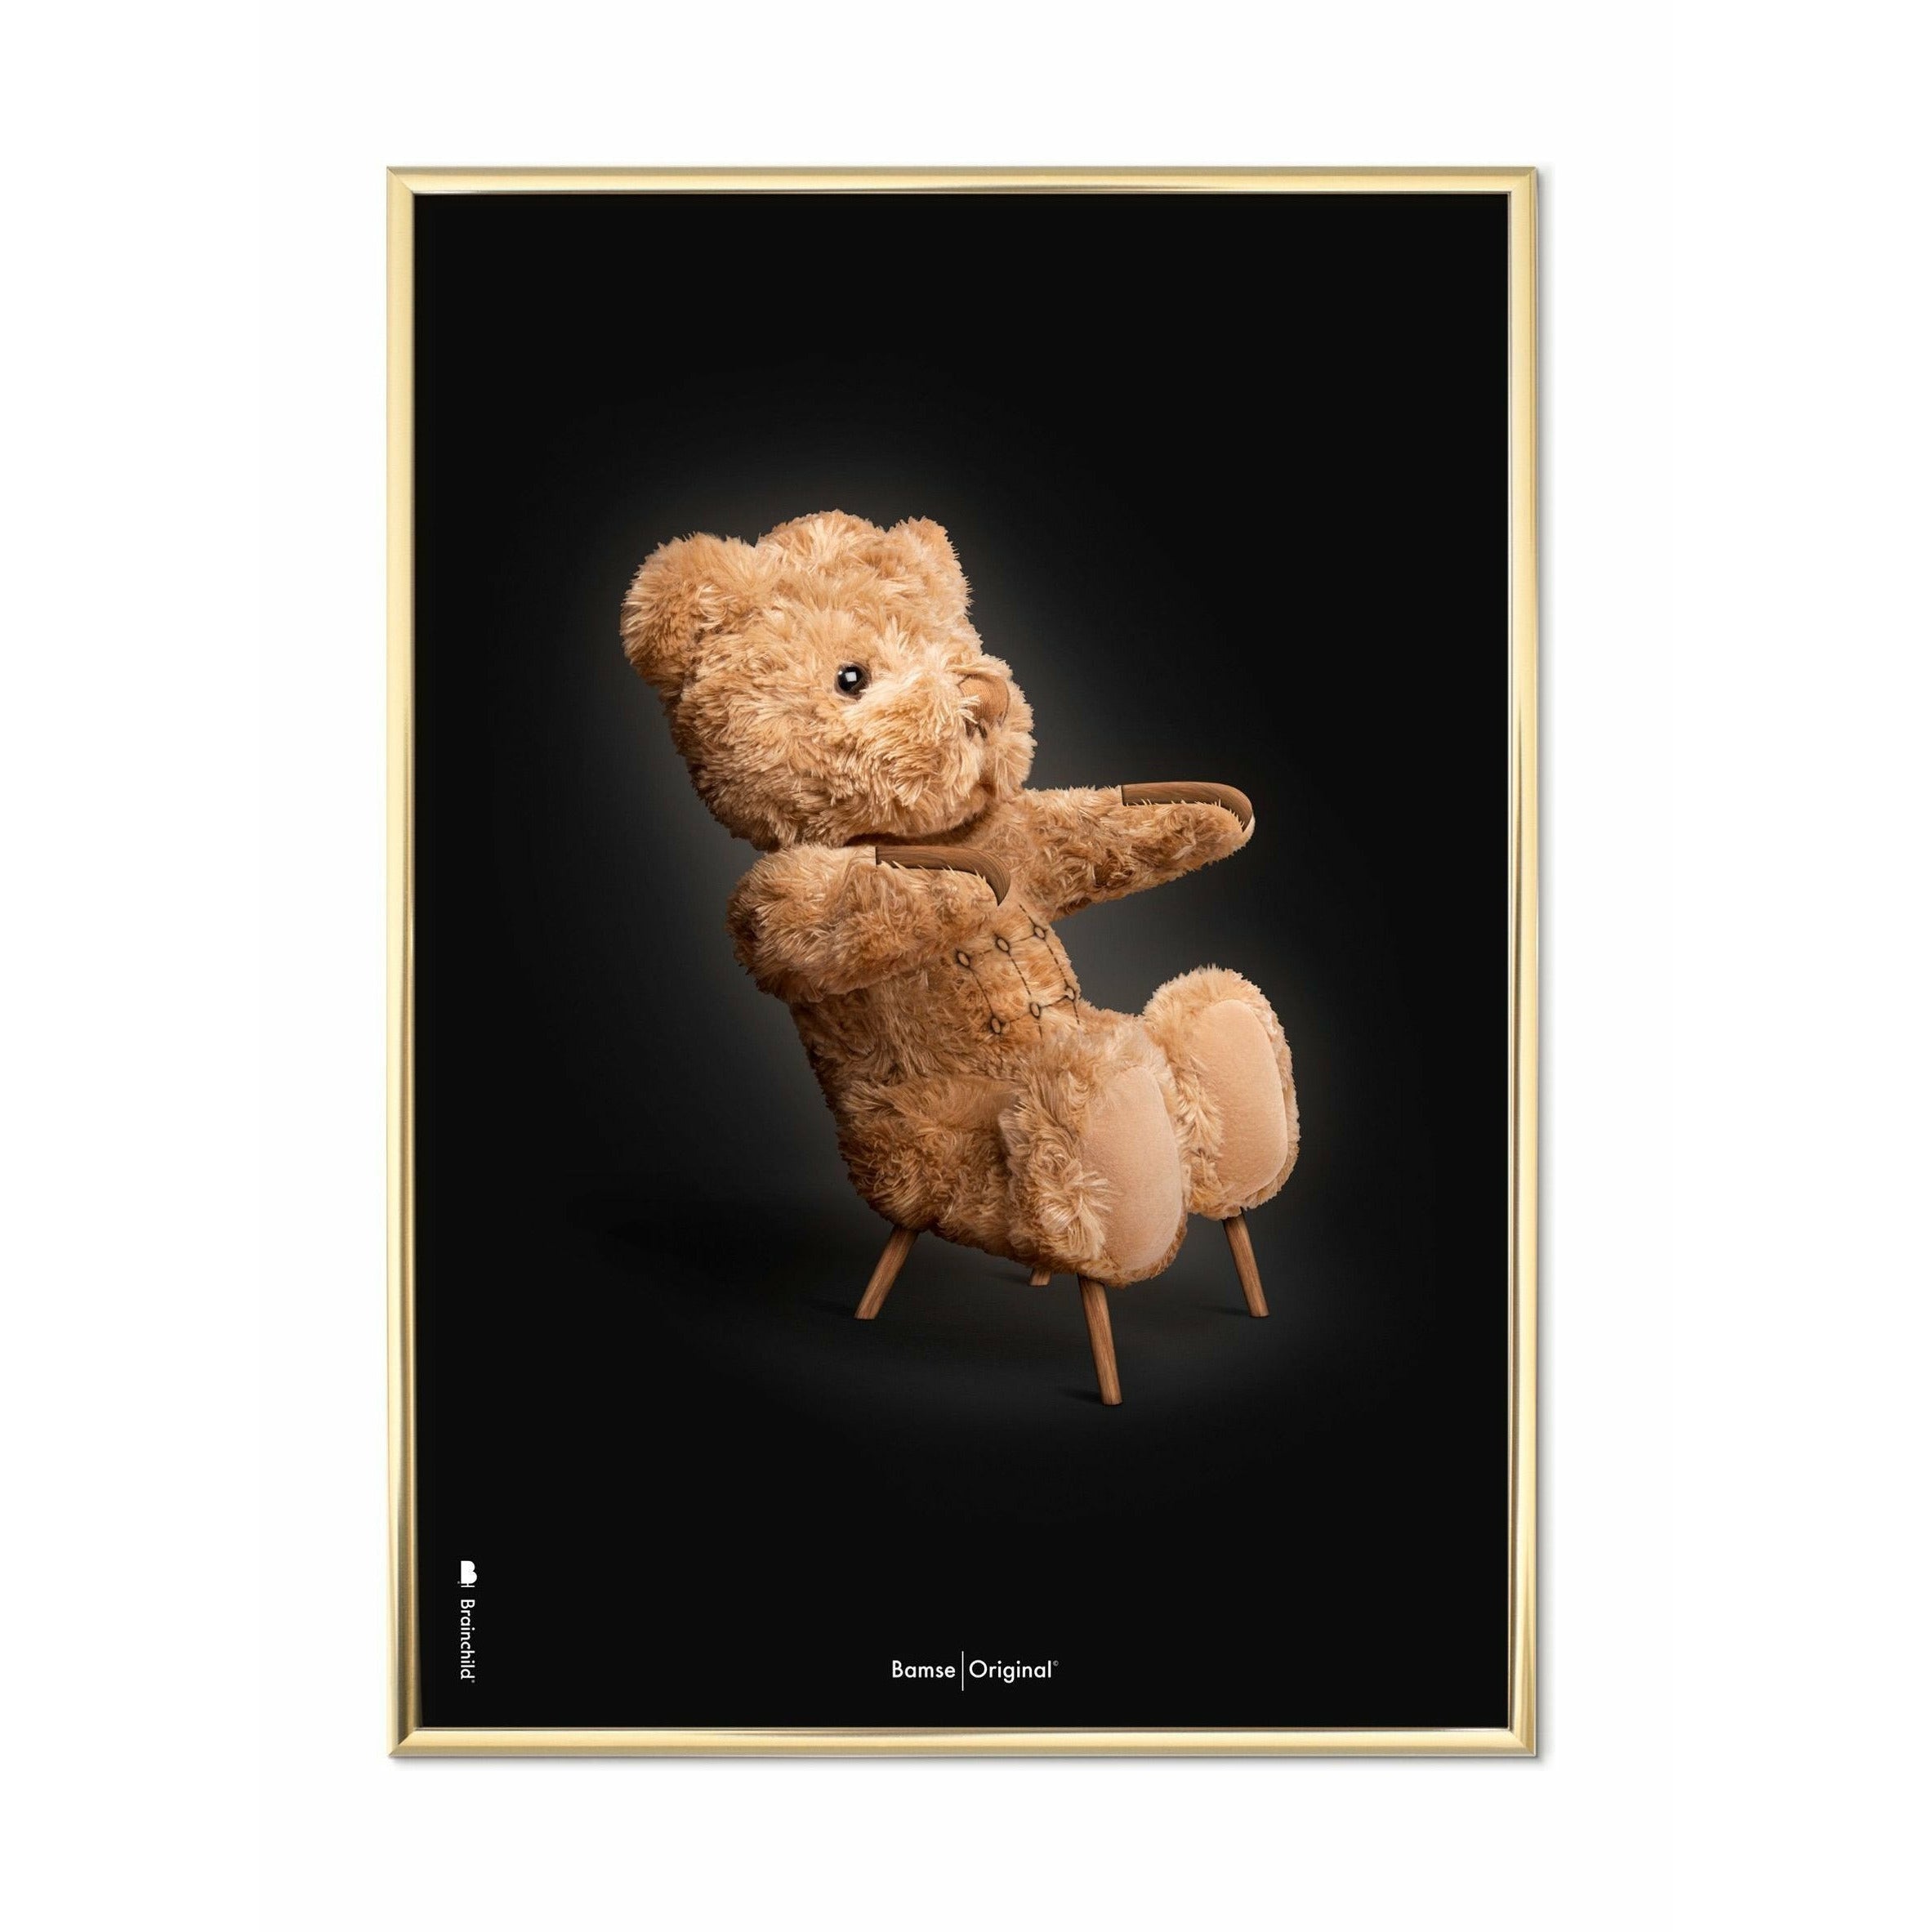 Brainchild Teddybär Classic Poster, Messingrahmen 50x70 Cm, schwarzer Hintergrund